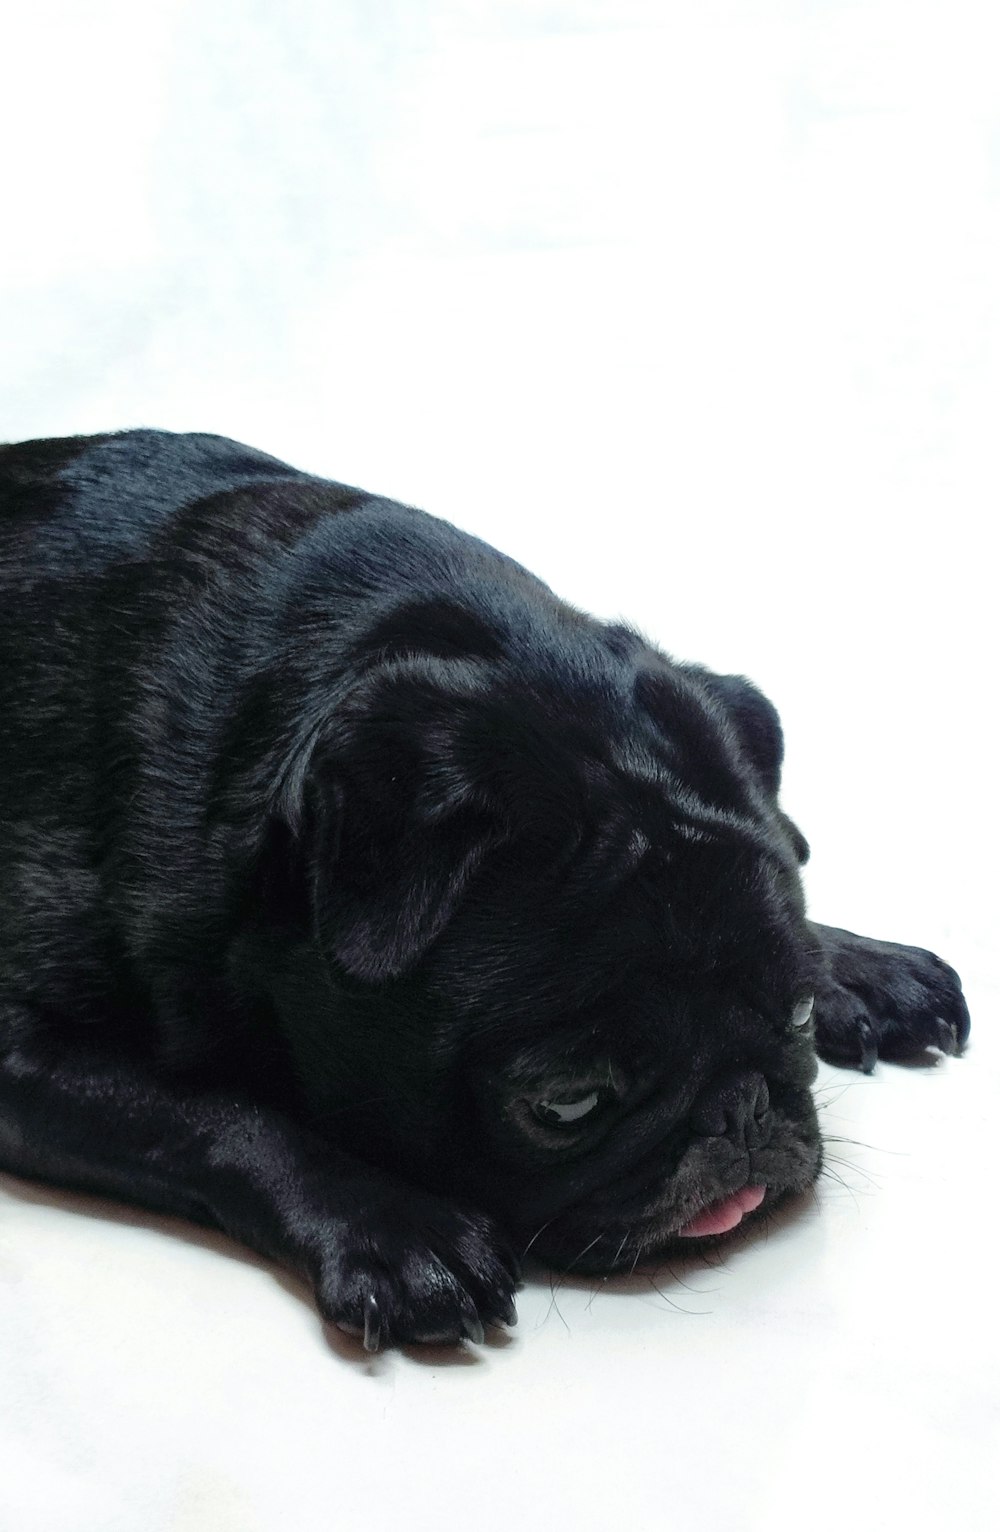 Un perro pug negro acostado sobre una superficie blanca